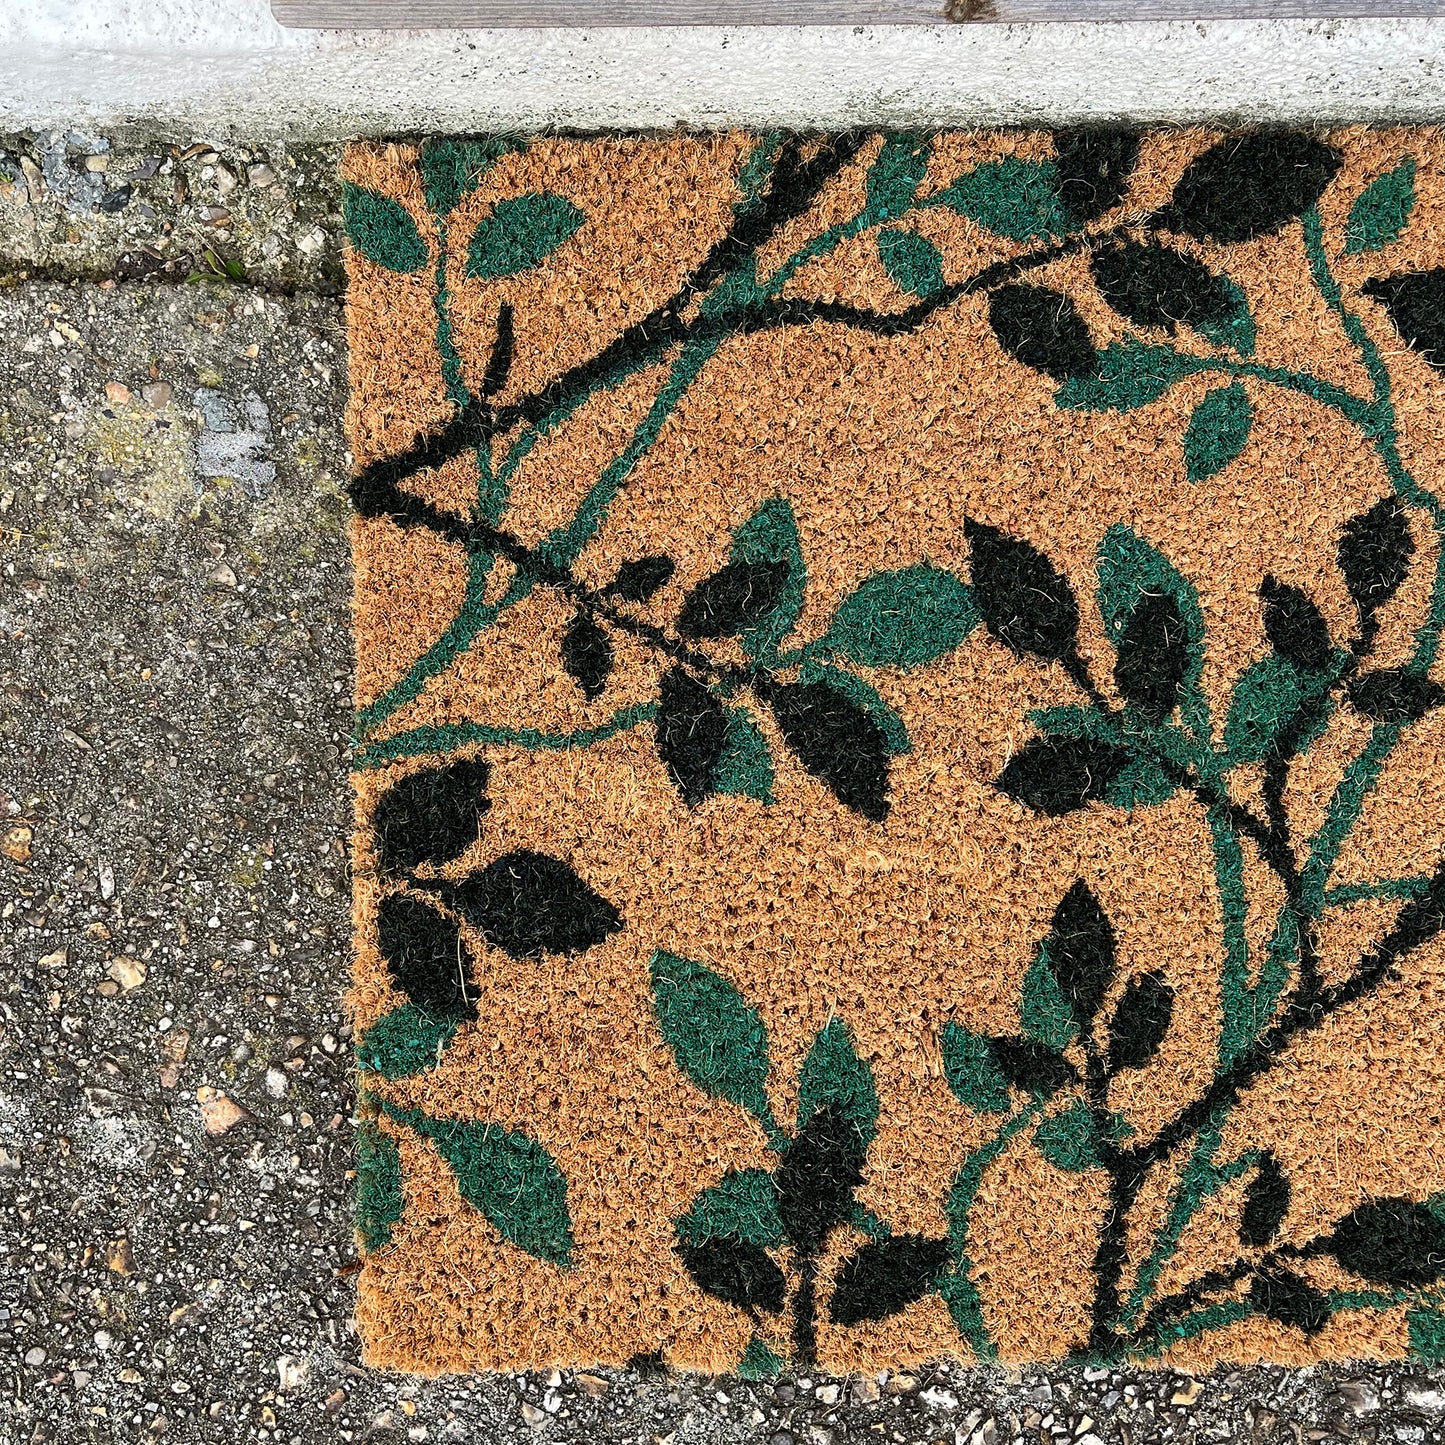 Green & Black Leaf Print Indoor & Outdoor Coir Doormat